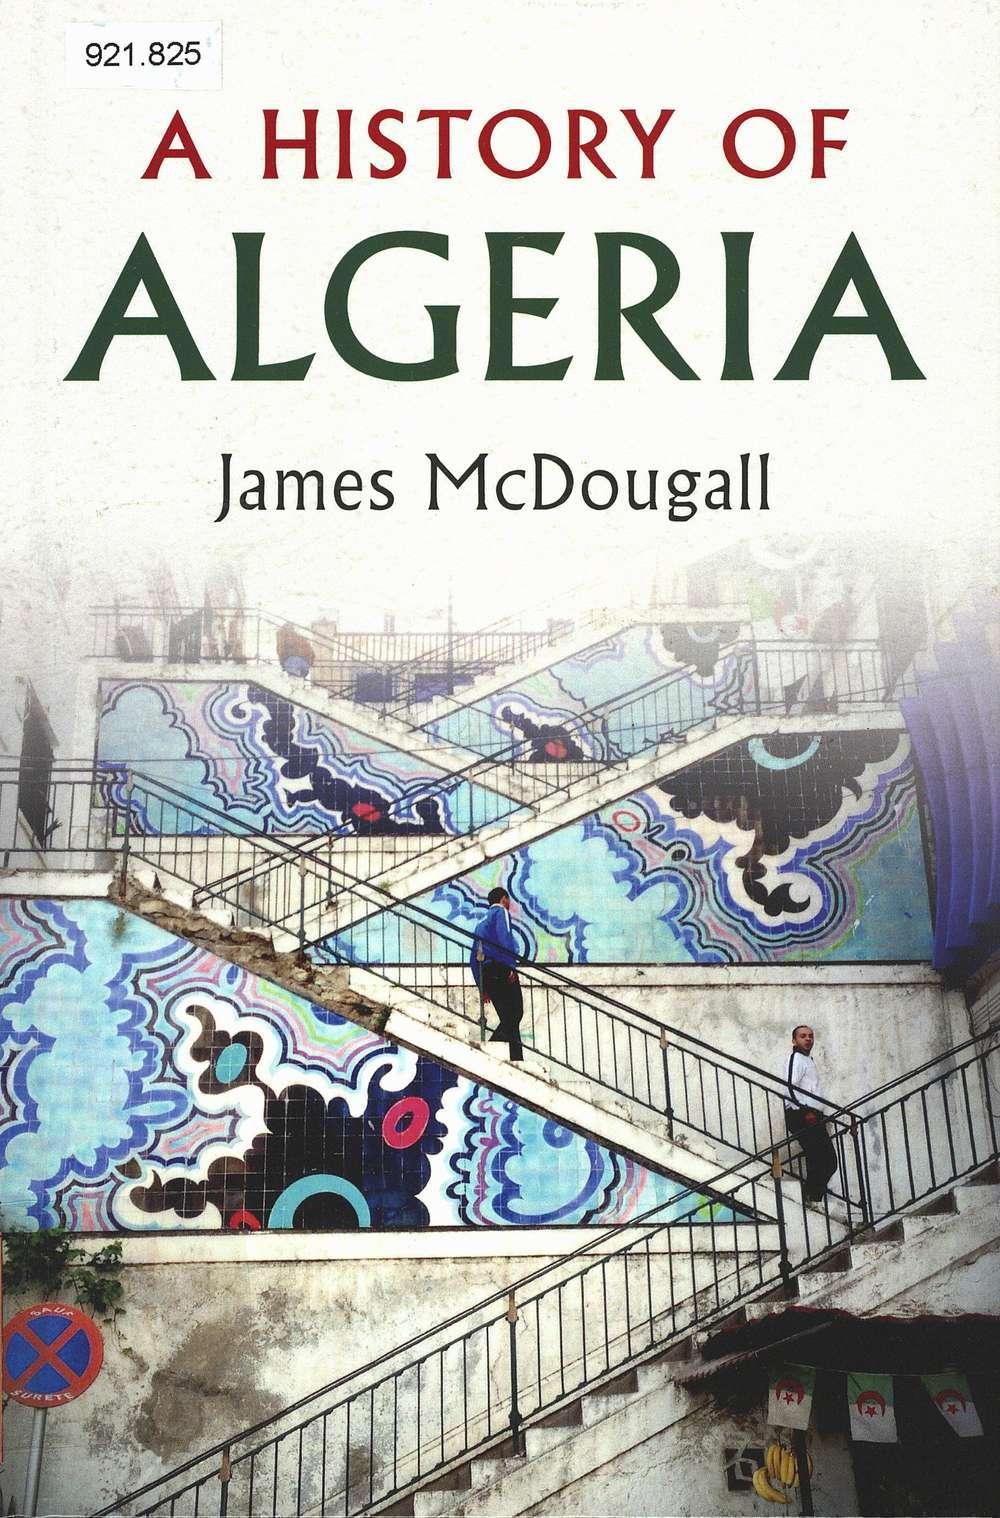 History of Algeria